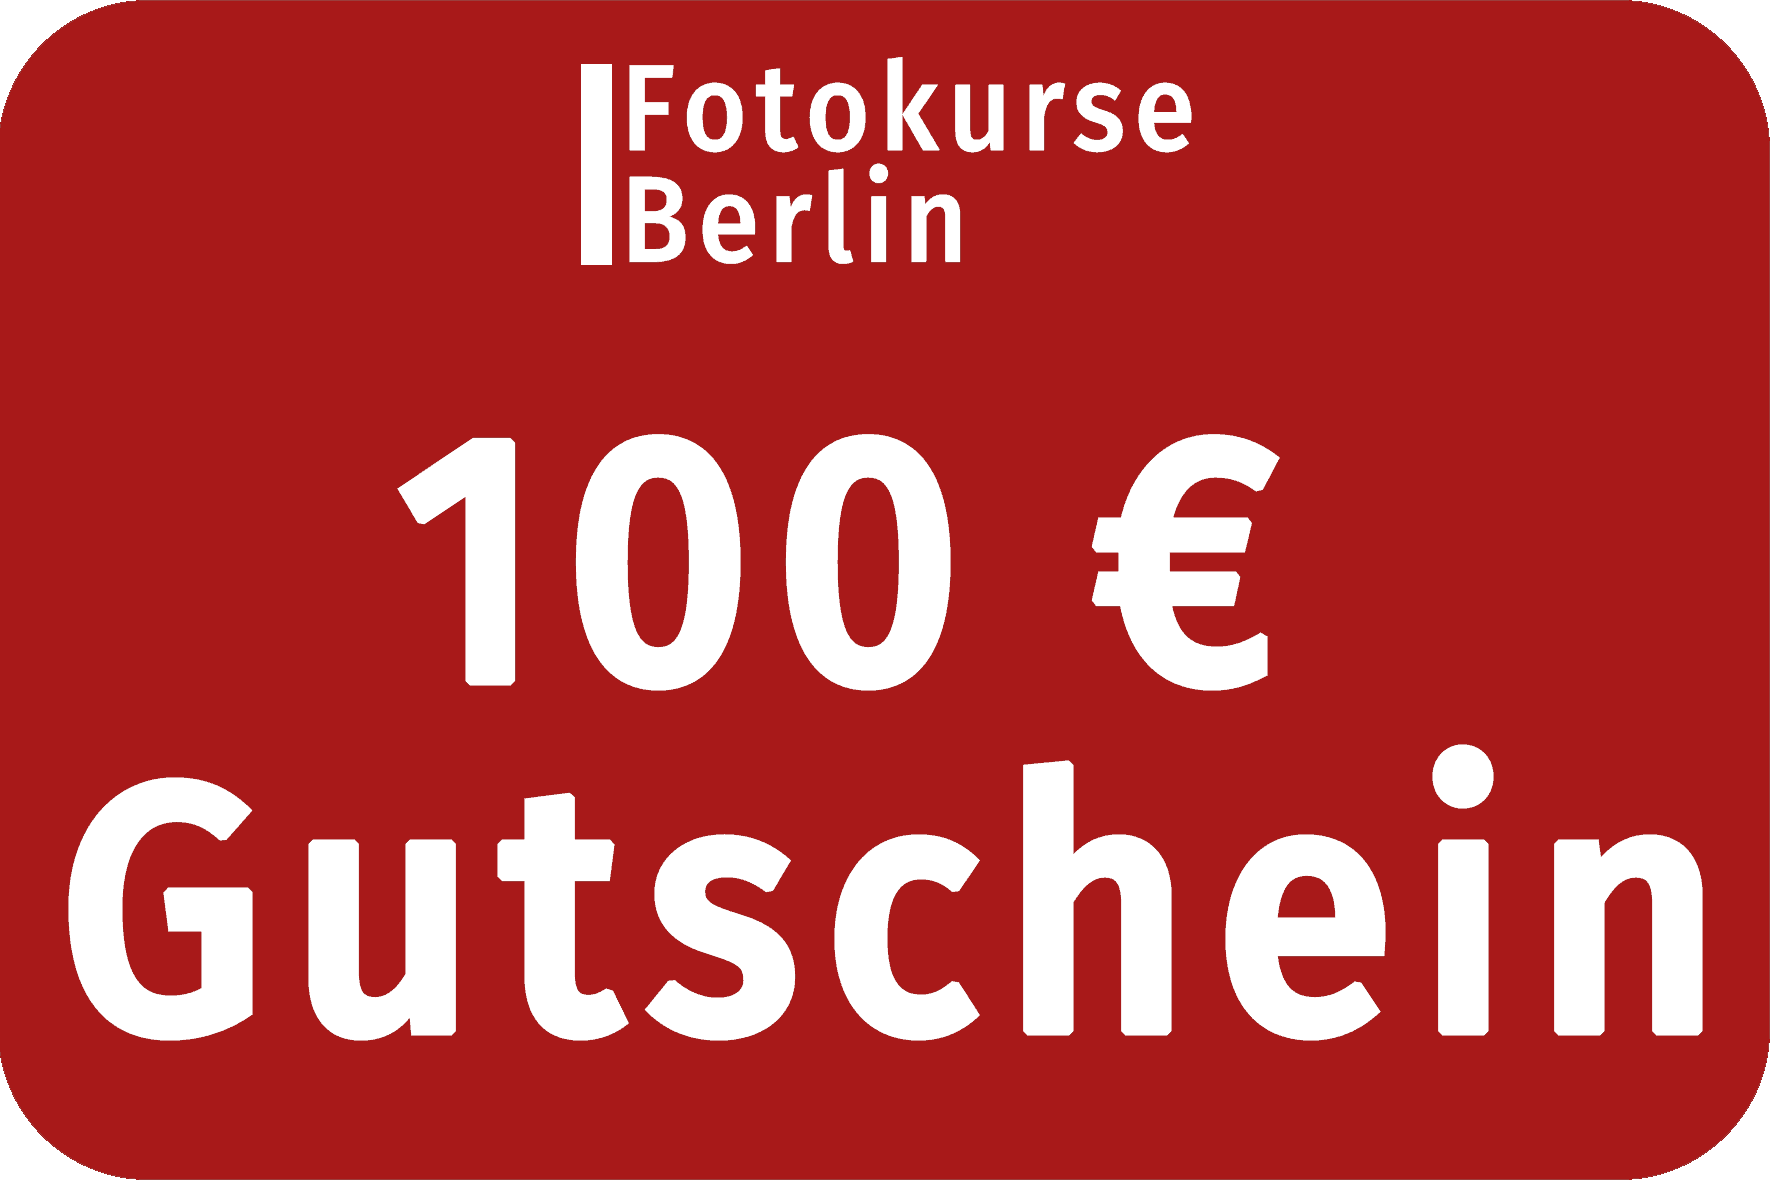 100 Euro Gutschein FotokurseBerlin.de